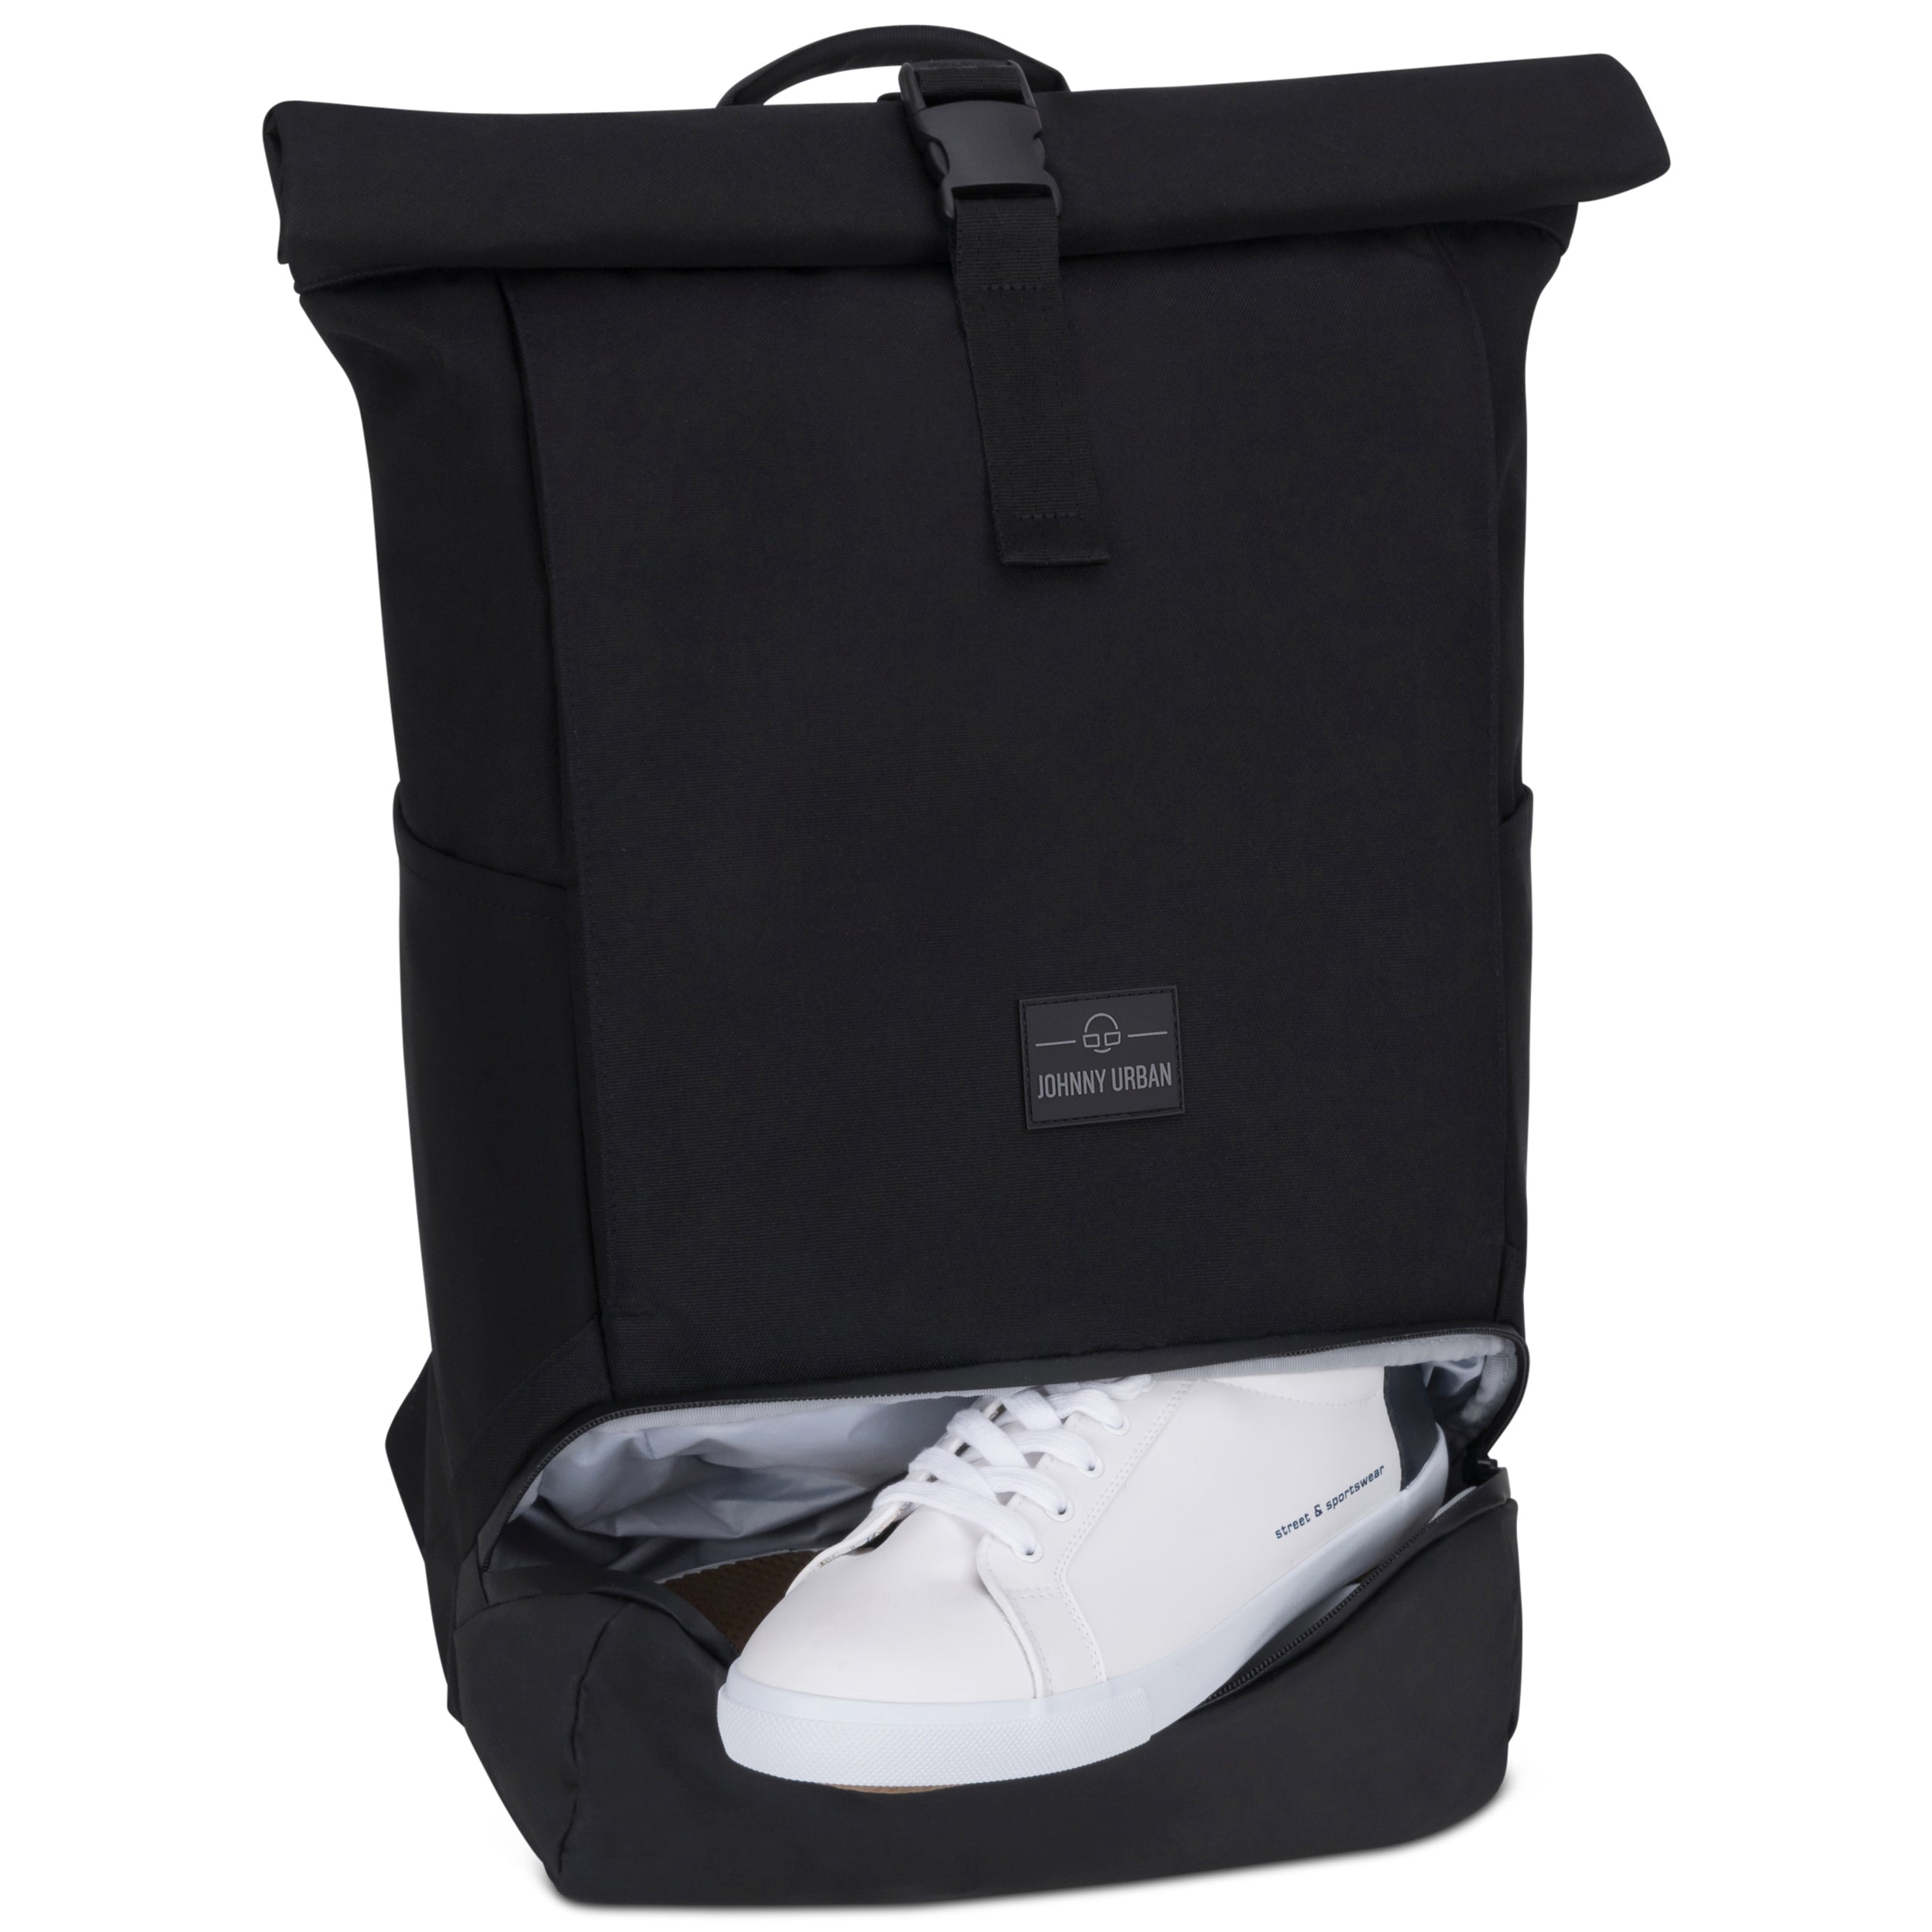 Rucksack mit Extrafach für nasse Klamotten oder Schuhe. ALT #farbe_schwarz